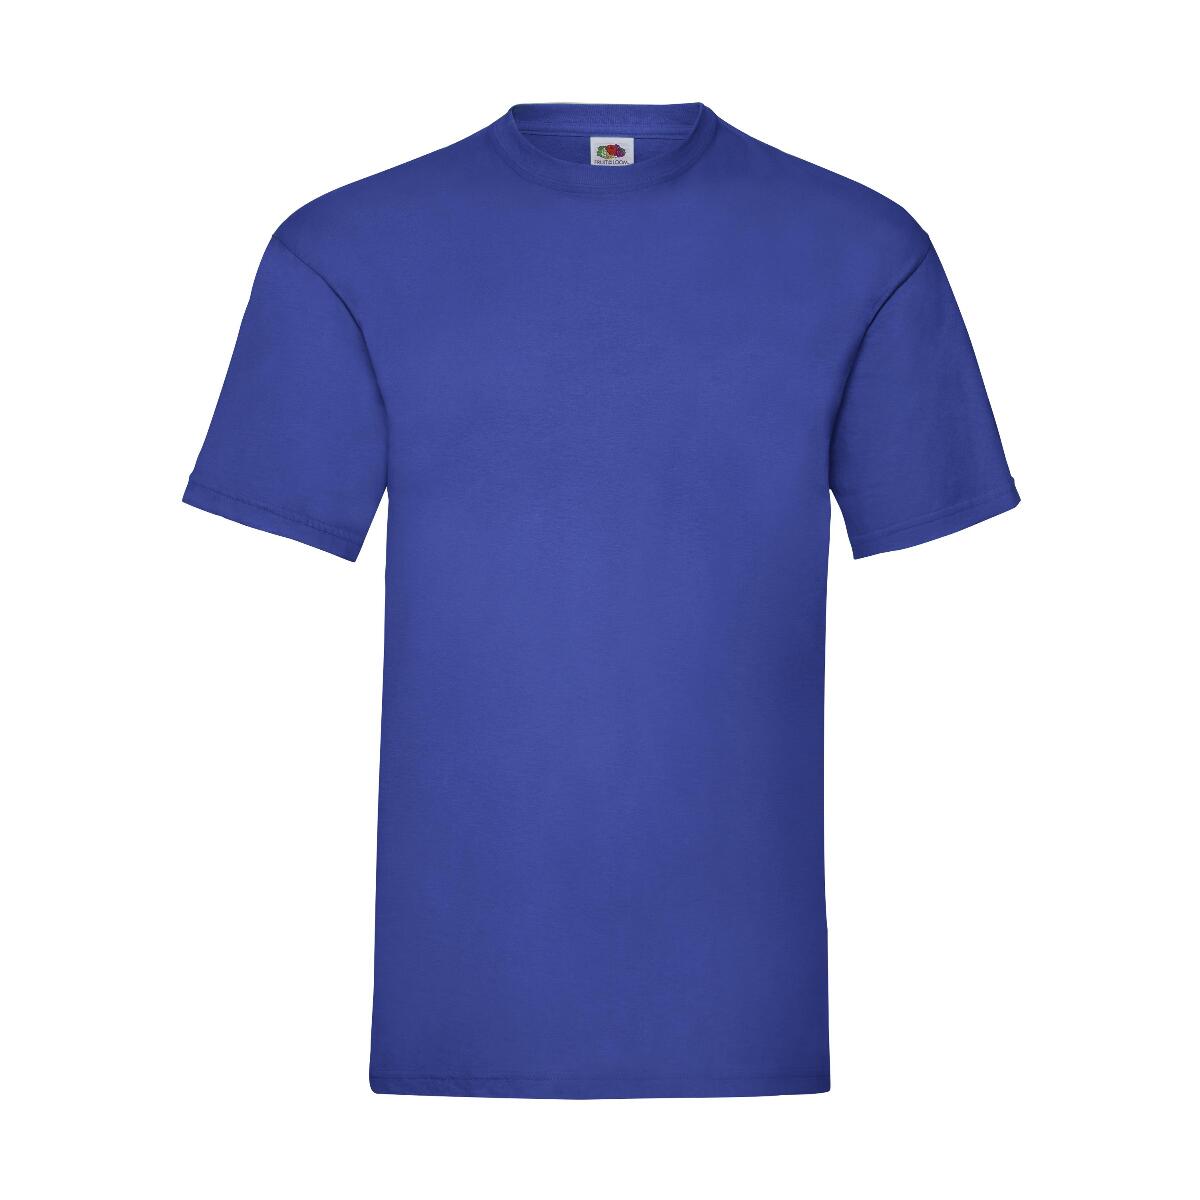 Genre Nauwgezet Persoonlijk Valueweight T (Heren T-shirt) - Shirts-bedrukken.nl